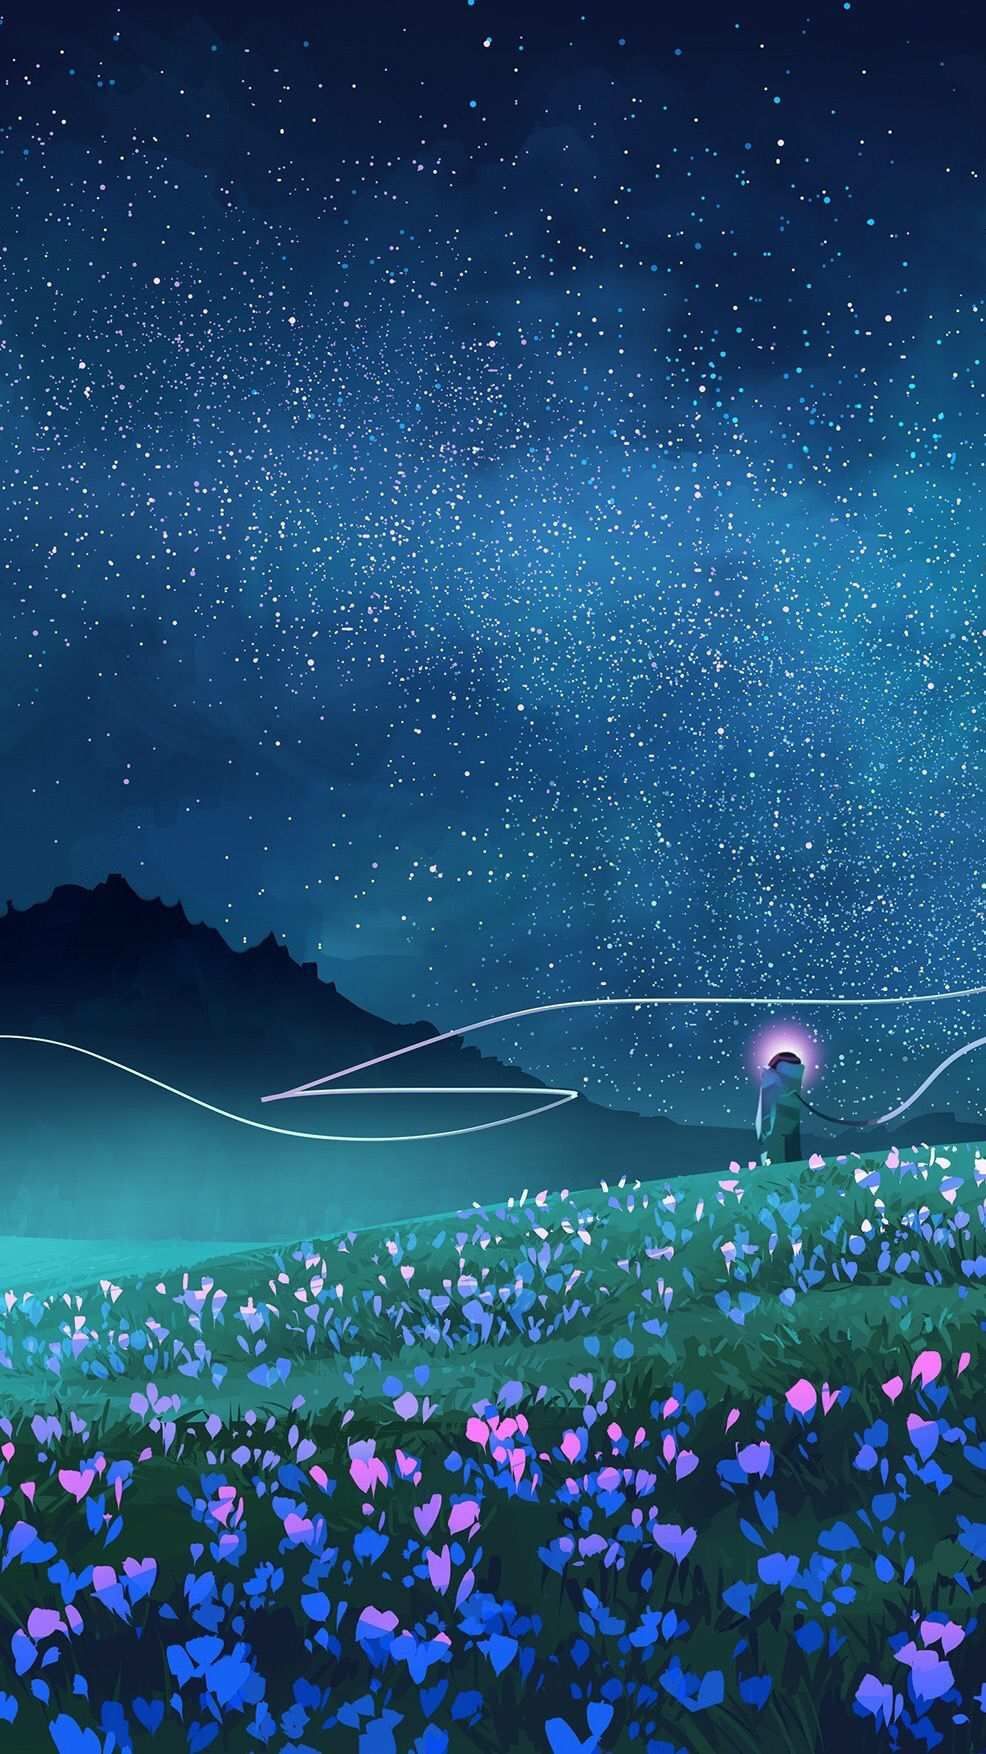 Night Sky Stars Beautiful Art iPhone Wallpaper. Scenery wallpaper, Anime scenery wallpaper, Sky art